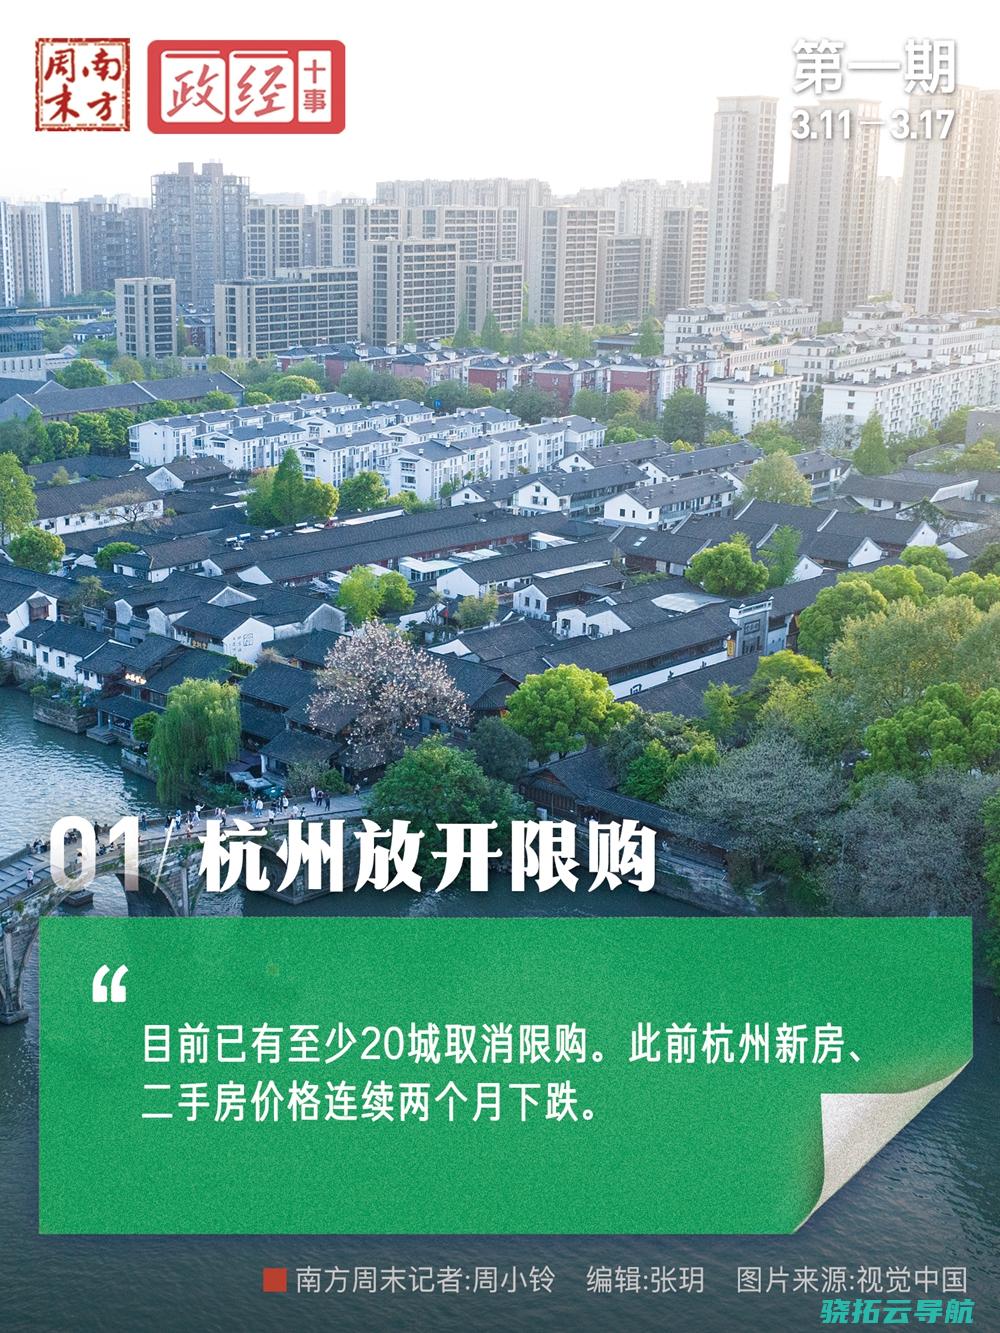 杭州片面开放限购 追随二十余个市区脚步 政经十事